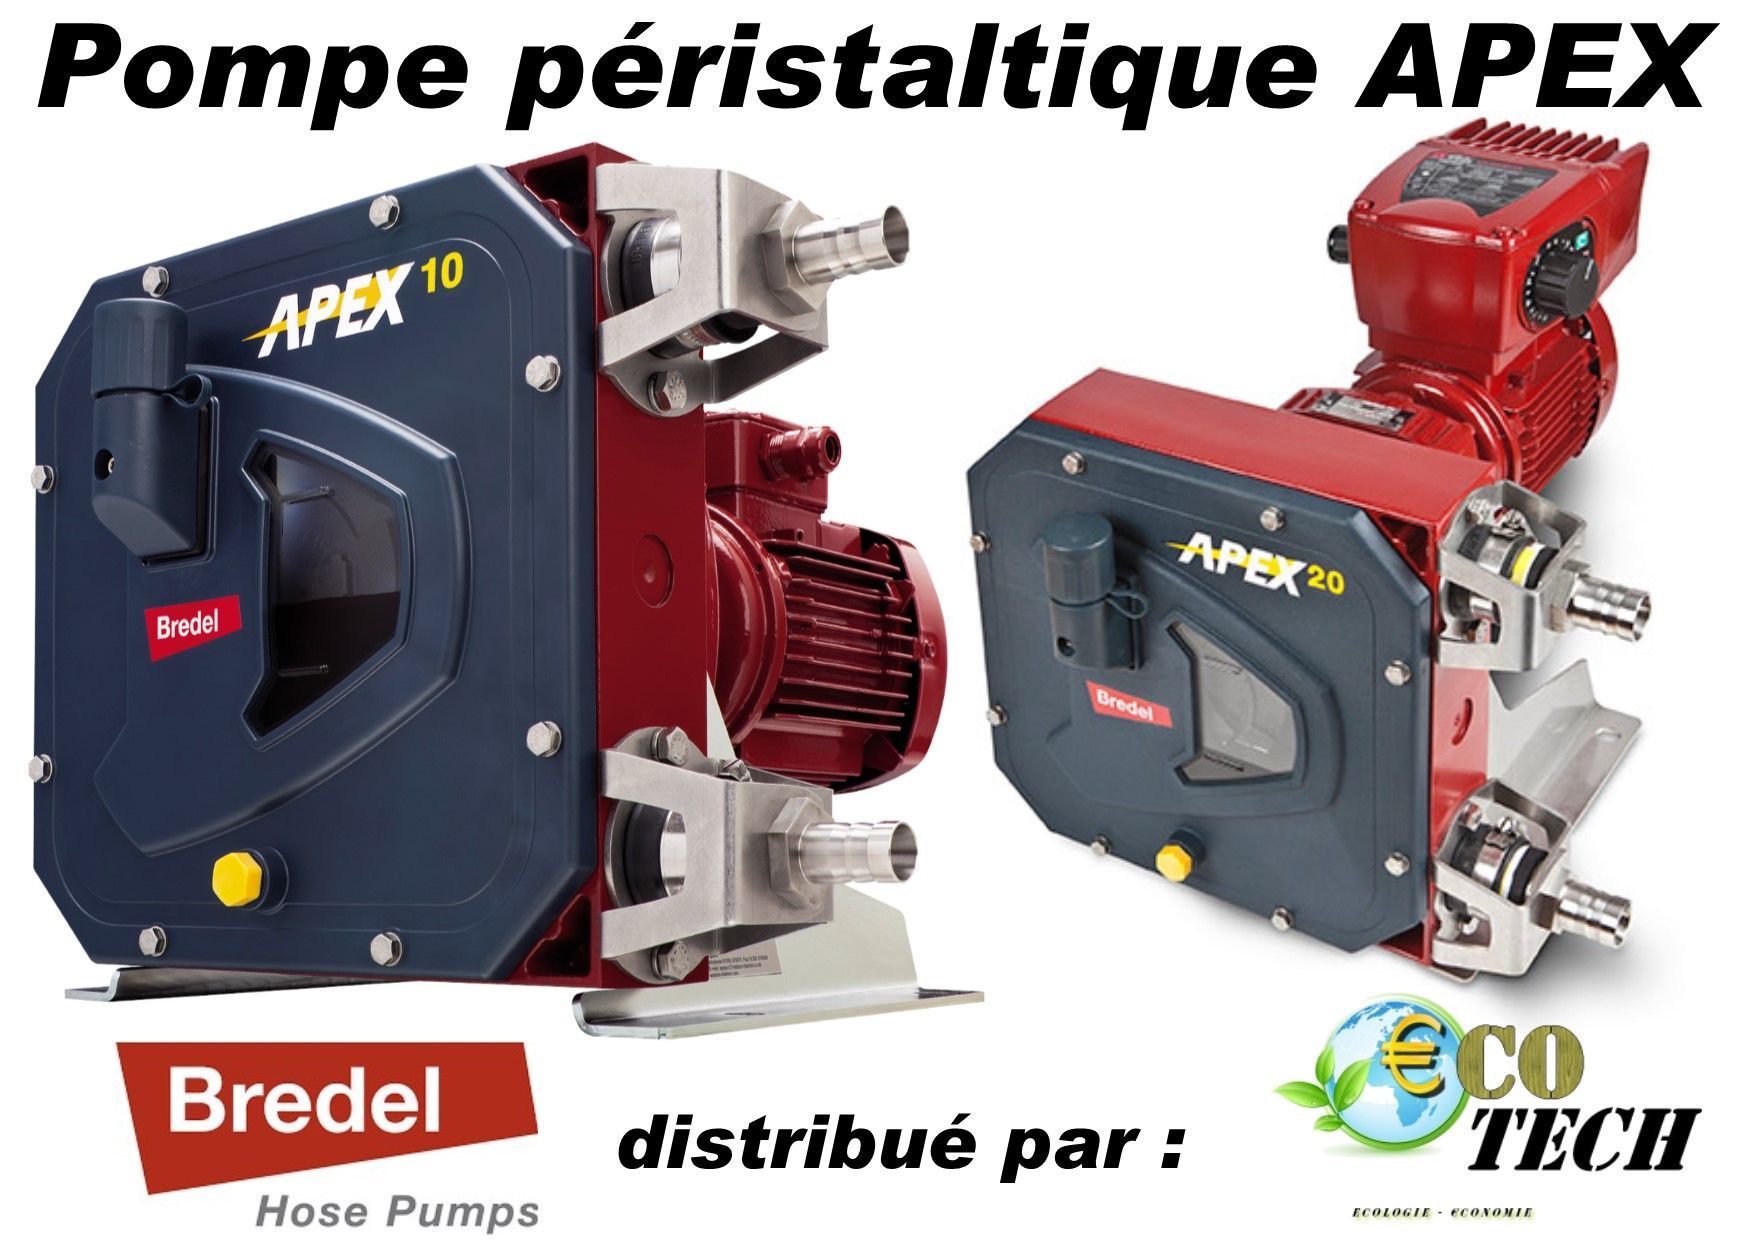 Bredel série apex - pompe volumétrique péristaltique_0